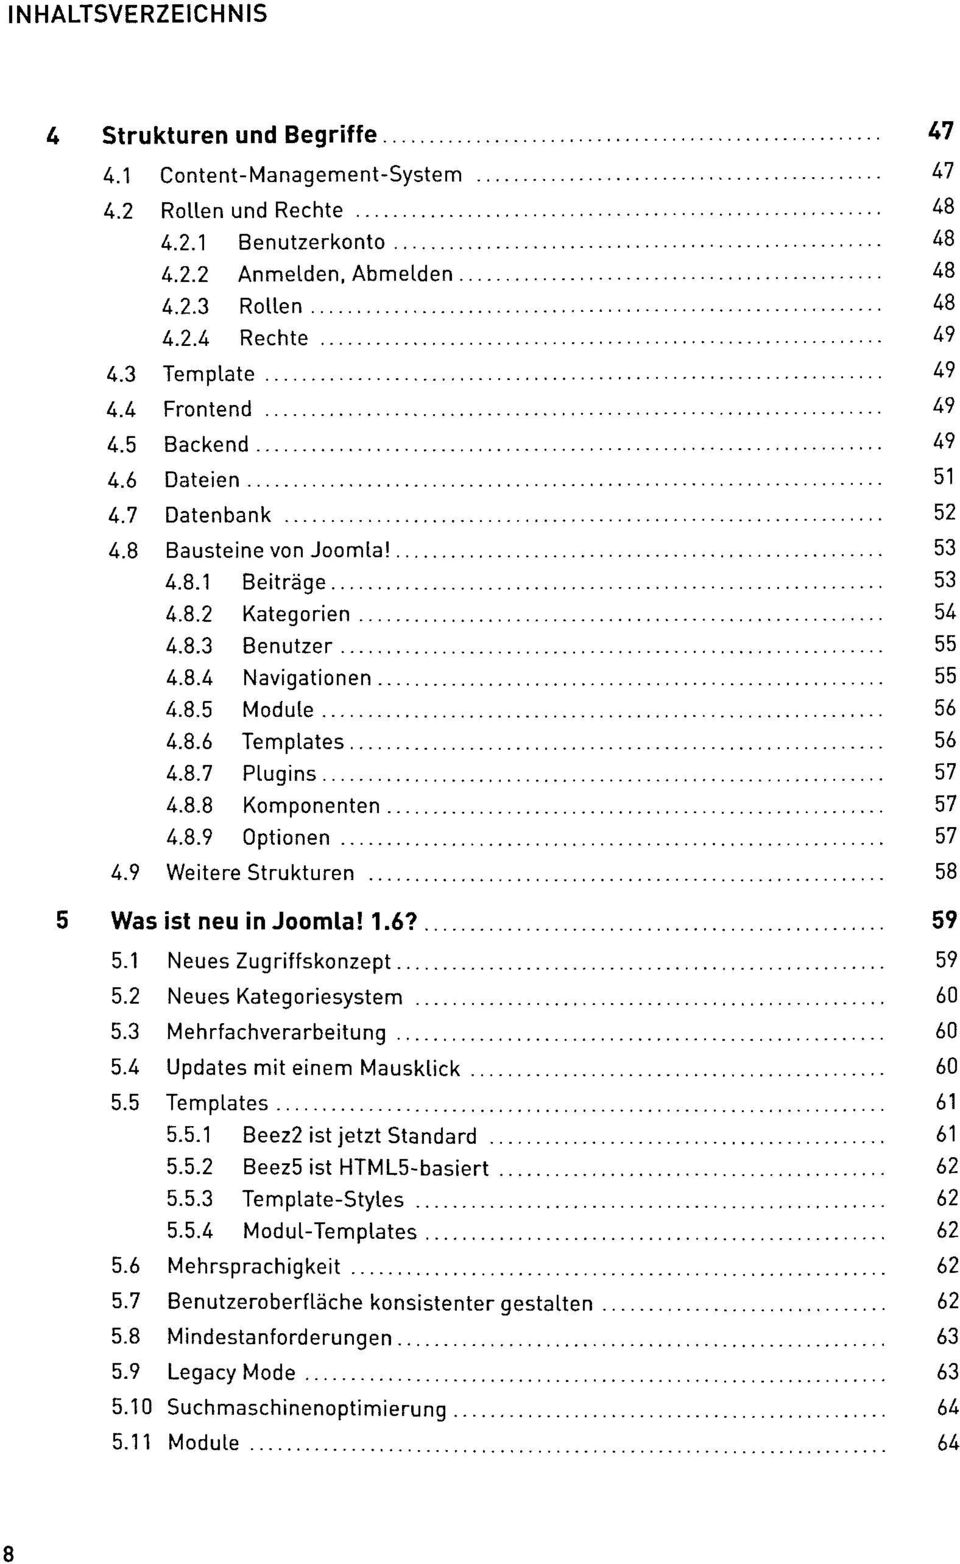 8.7 Plugins 57 4.8.8 Komponenten 57 4.8.9 Optionen 57 4.9 Weitere Strukturen 58 5 Was ist neu in Joomla! 1.6? 59 5.1 Neues Zugriffskonzept 59 5.2 Neues Kategoriesystem 60 5.